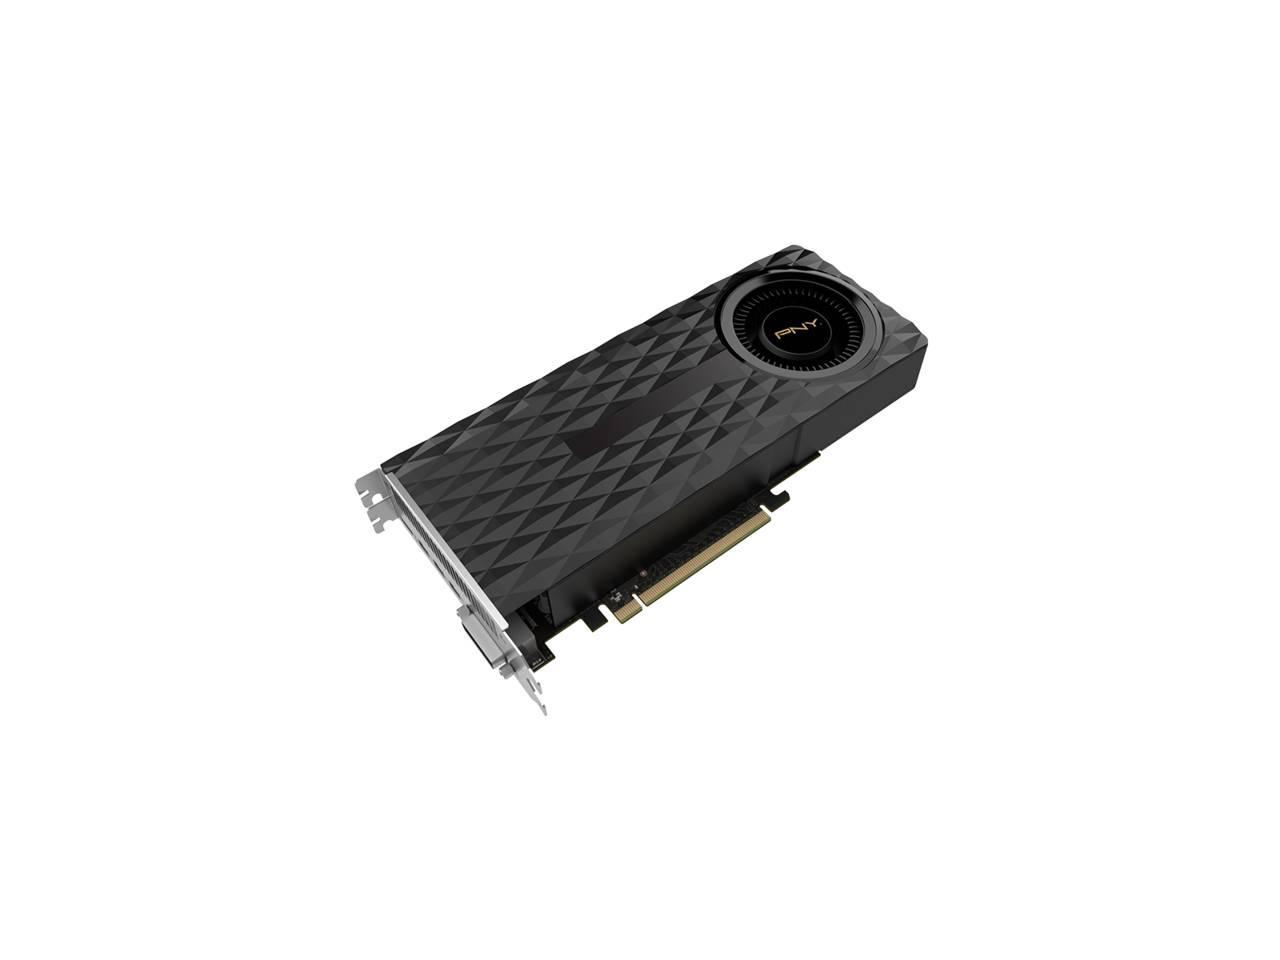 Pny Nvidia Geforce Gtx 970 4gb Gddr5 Dvi Mini Hdmi 3mini Displayport Pci Express Video Graphics Card Newegg Com